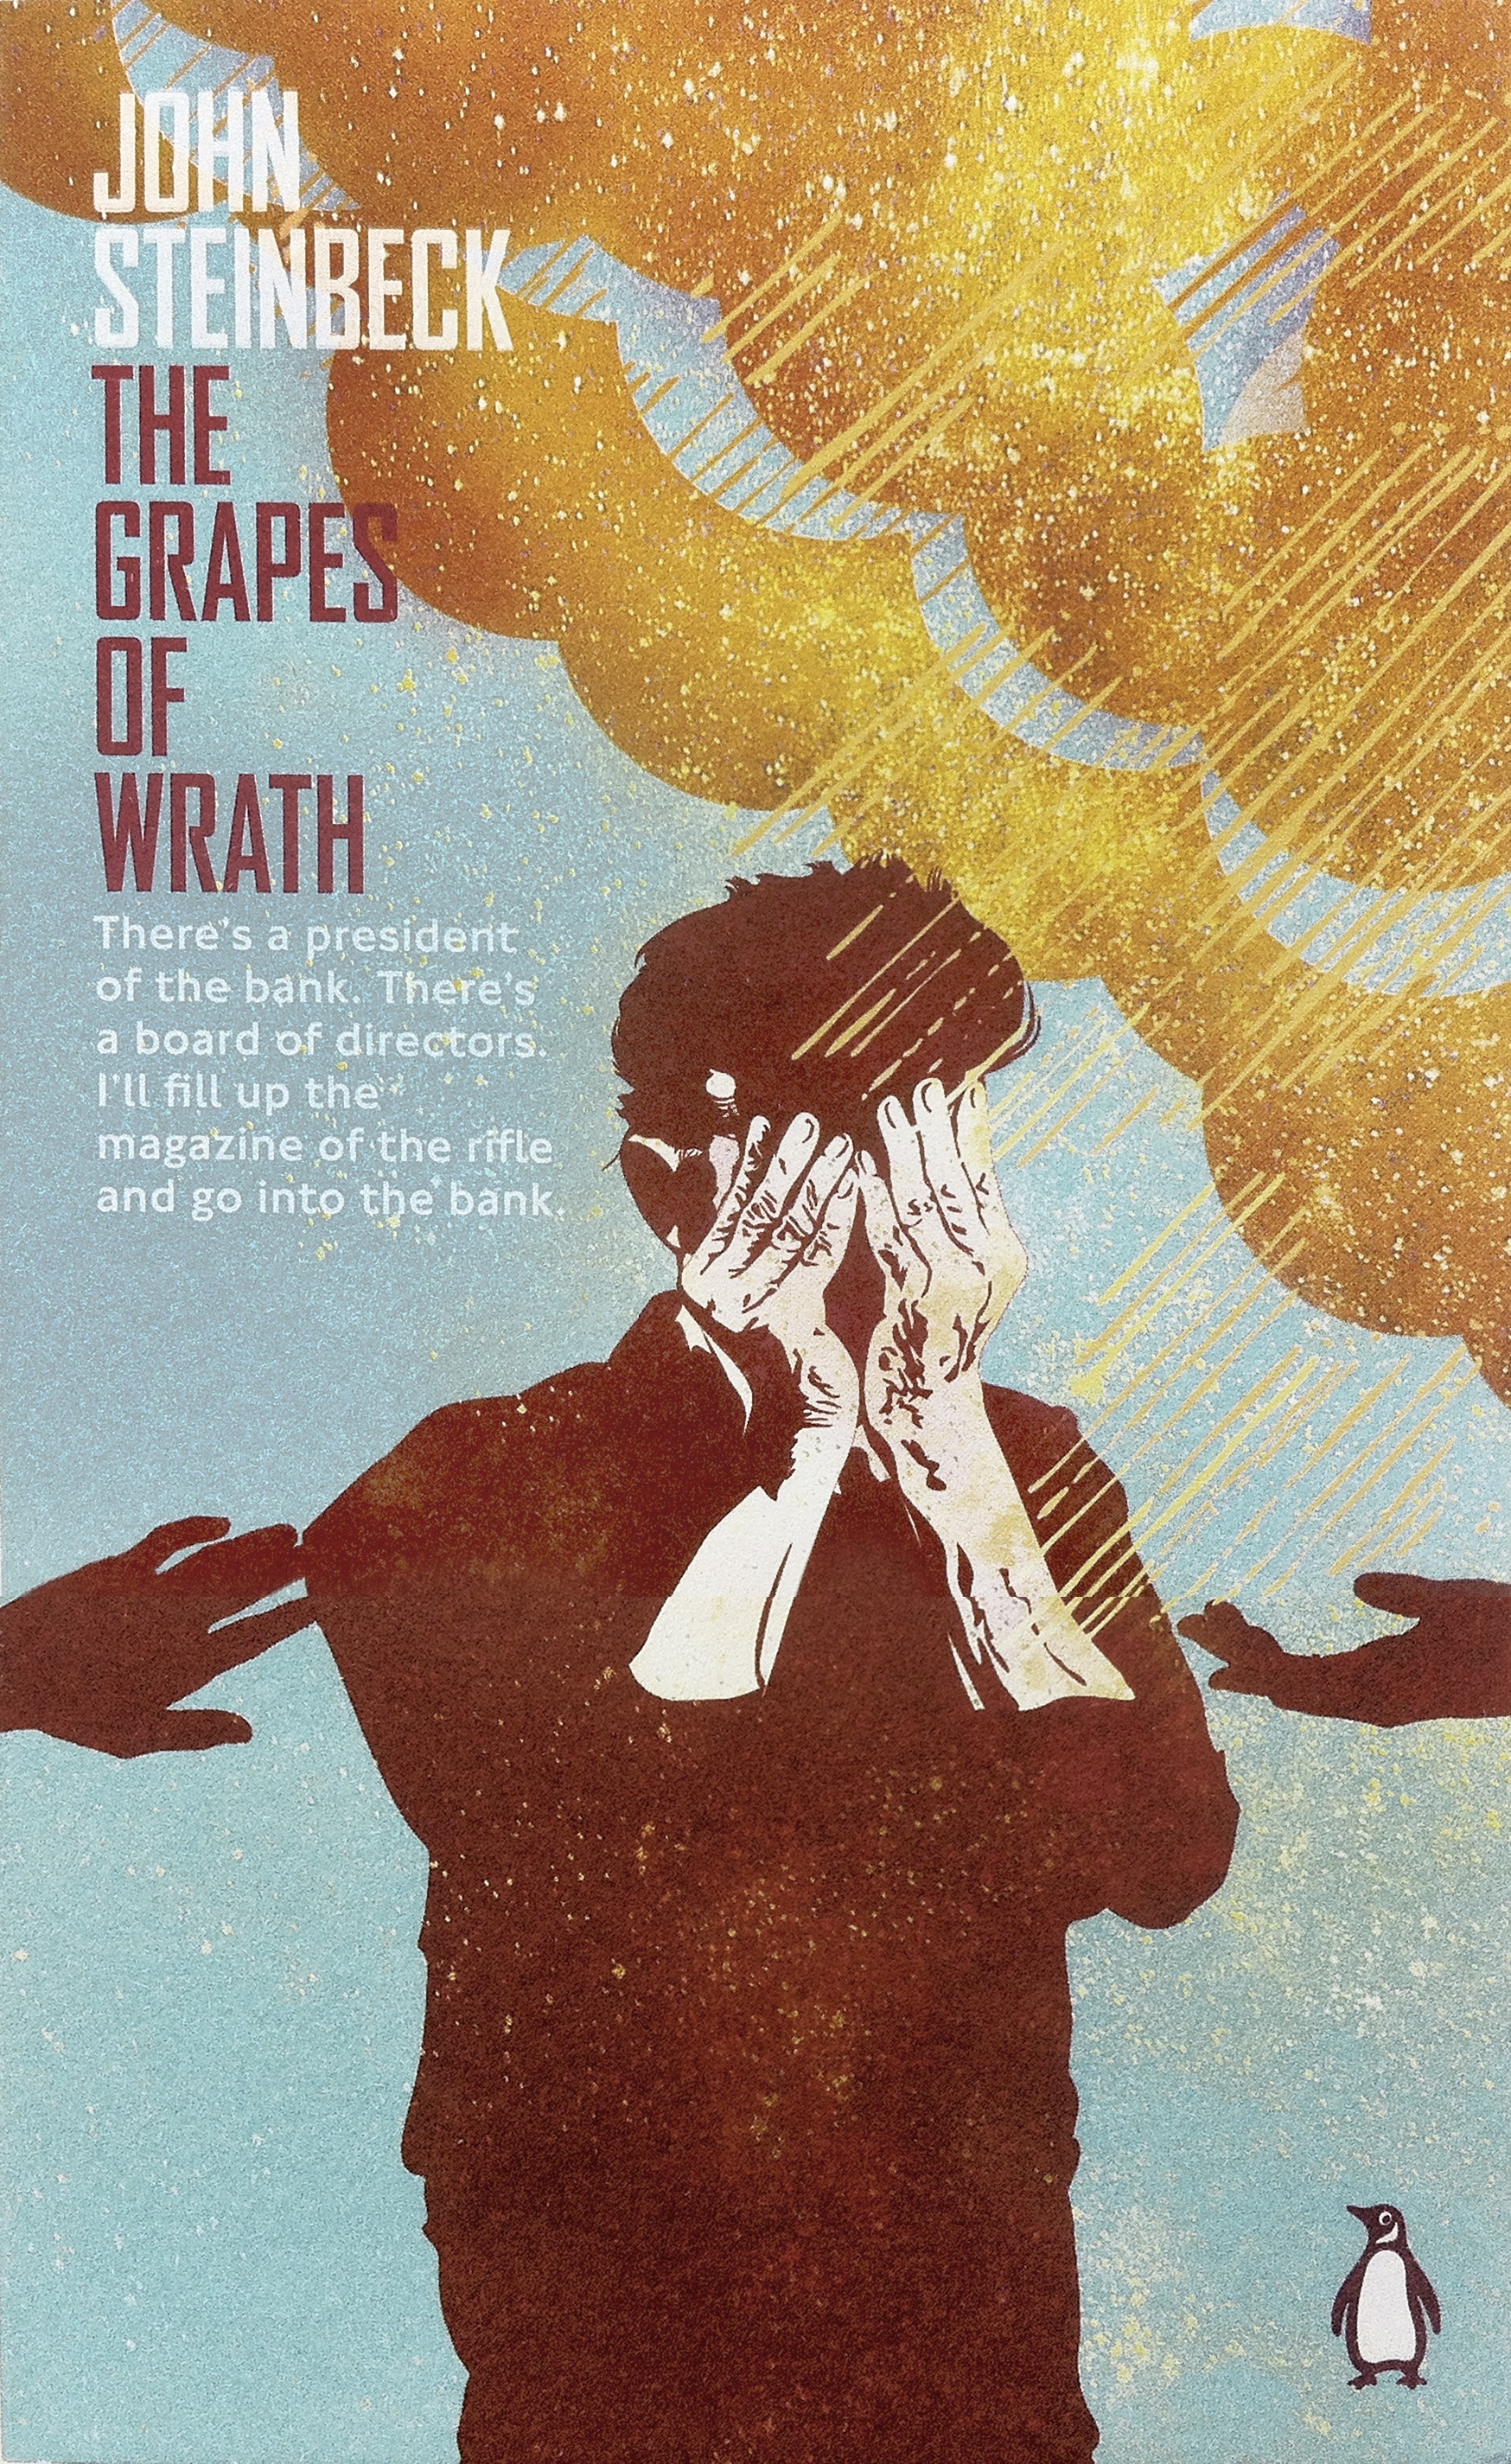 Book “The Grapes of Wrath” by John Steinbeck, Robert DeMott — April 3, 2014